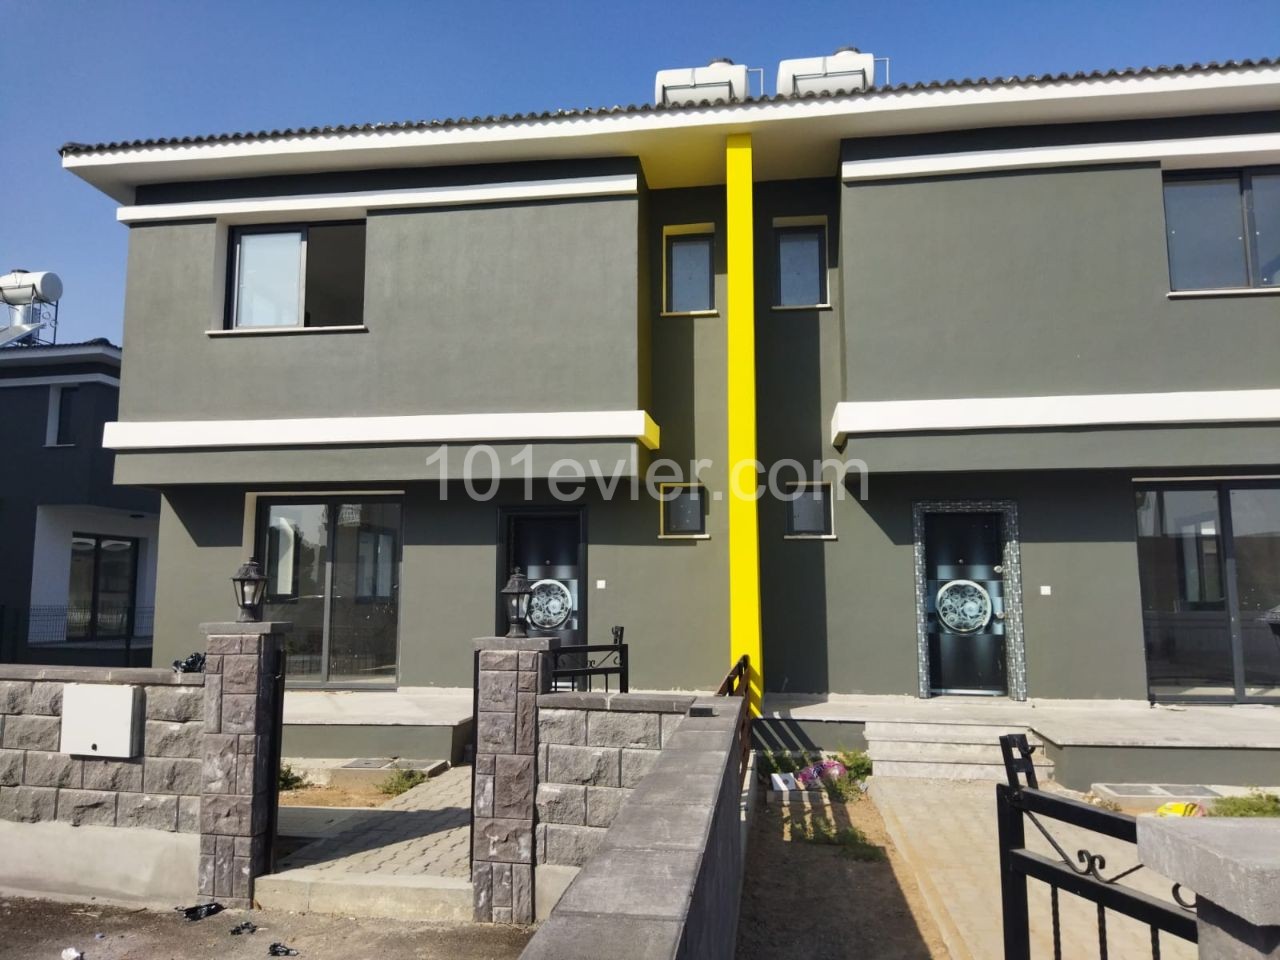 3 + 1 geräumige Villa zum Verkauf in Nikosia zum Verkaufspreis! ** 